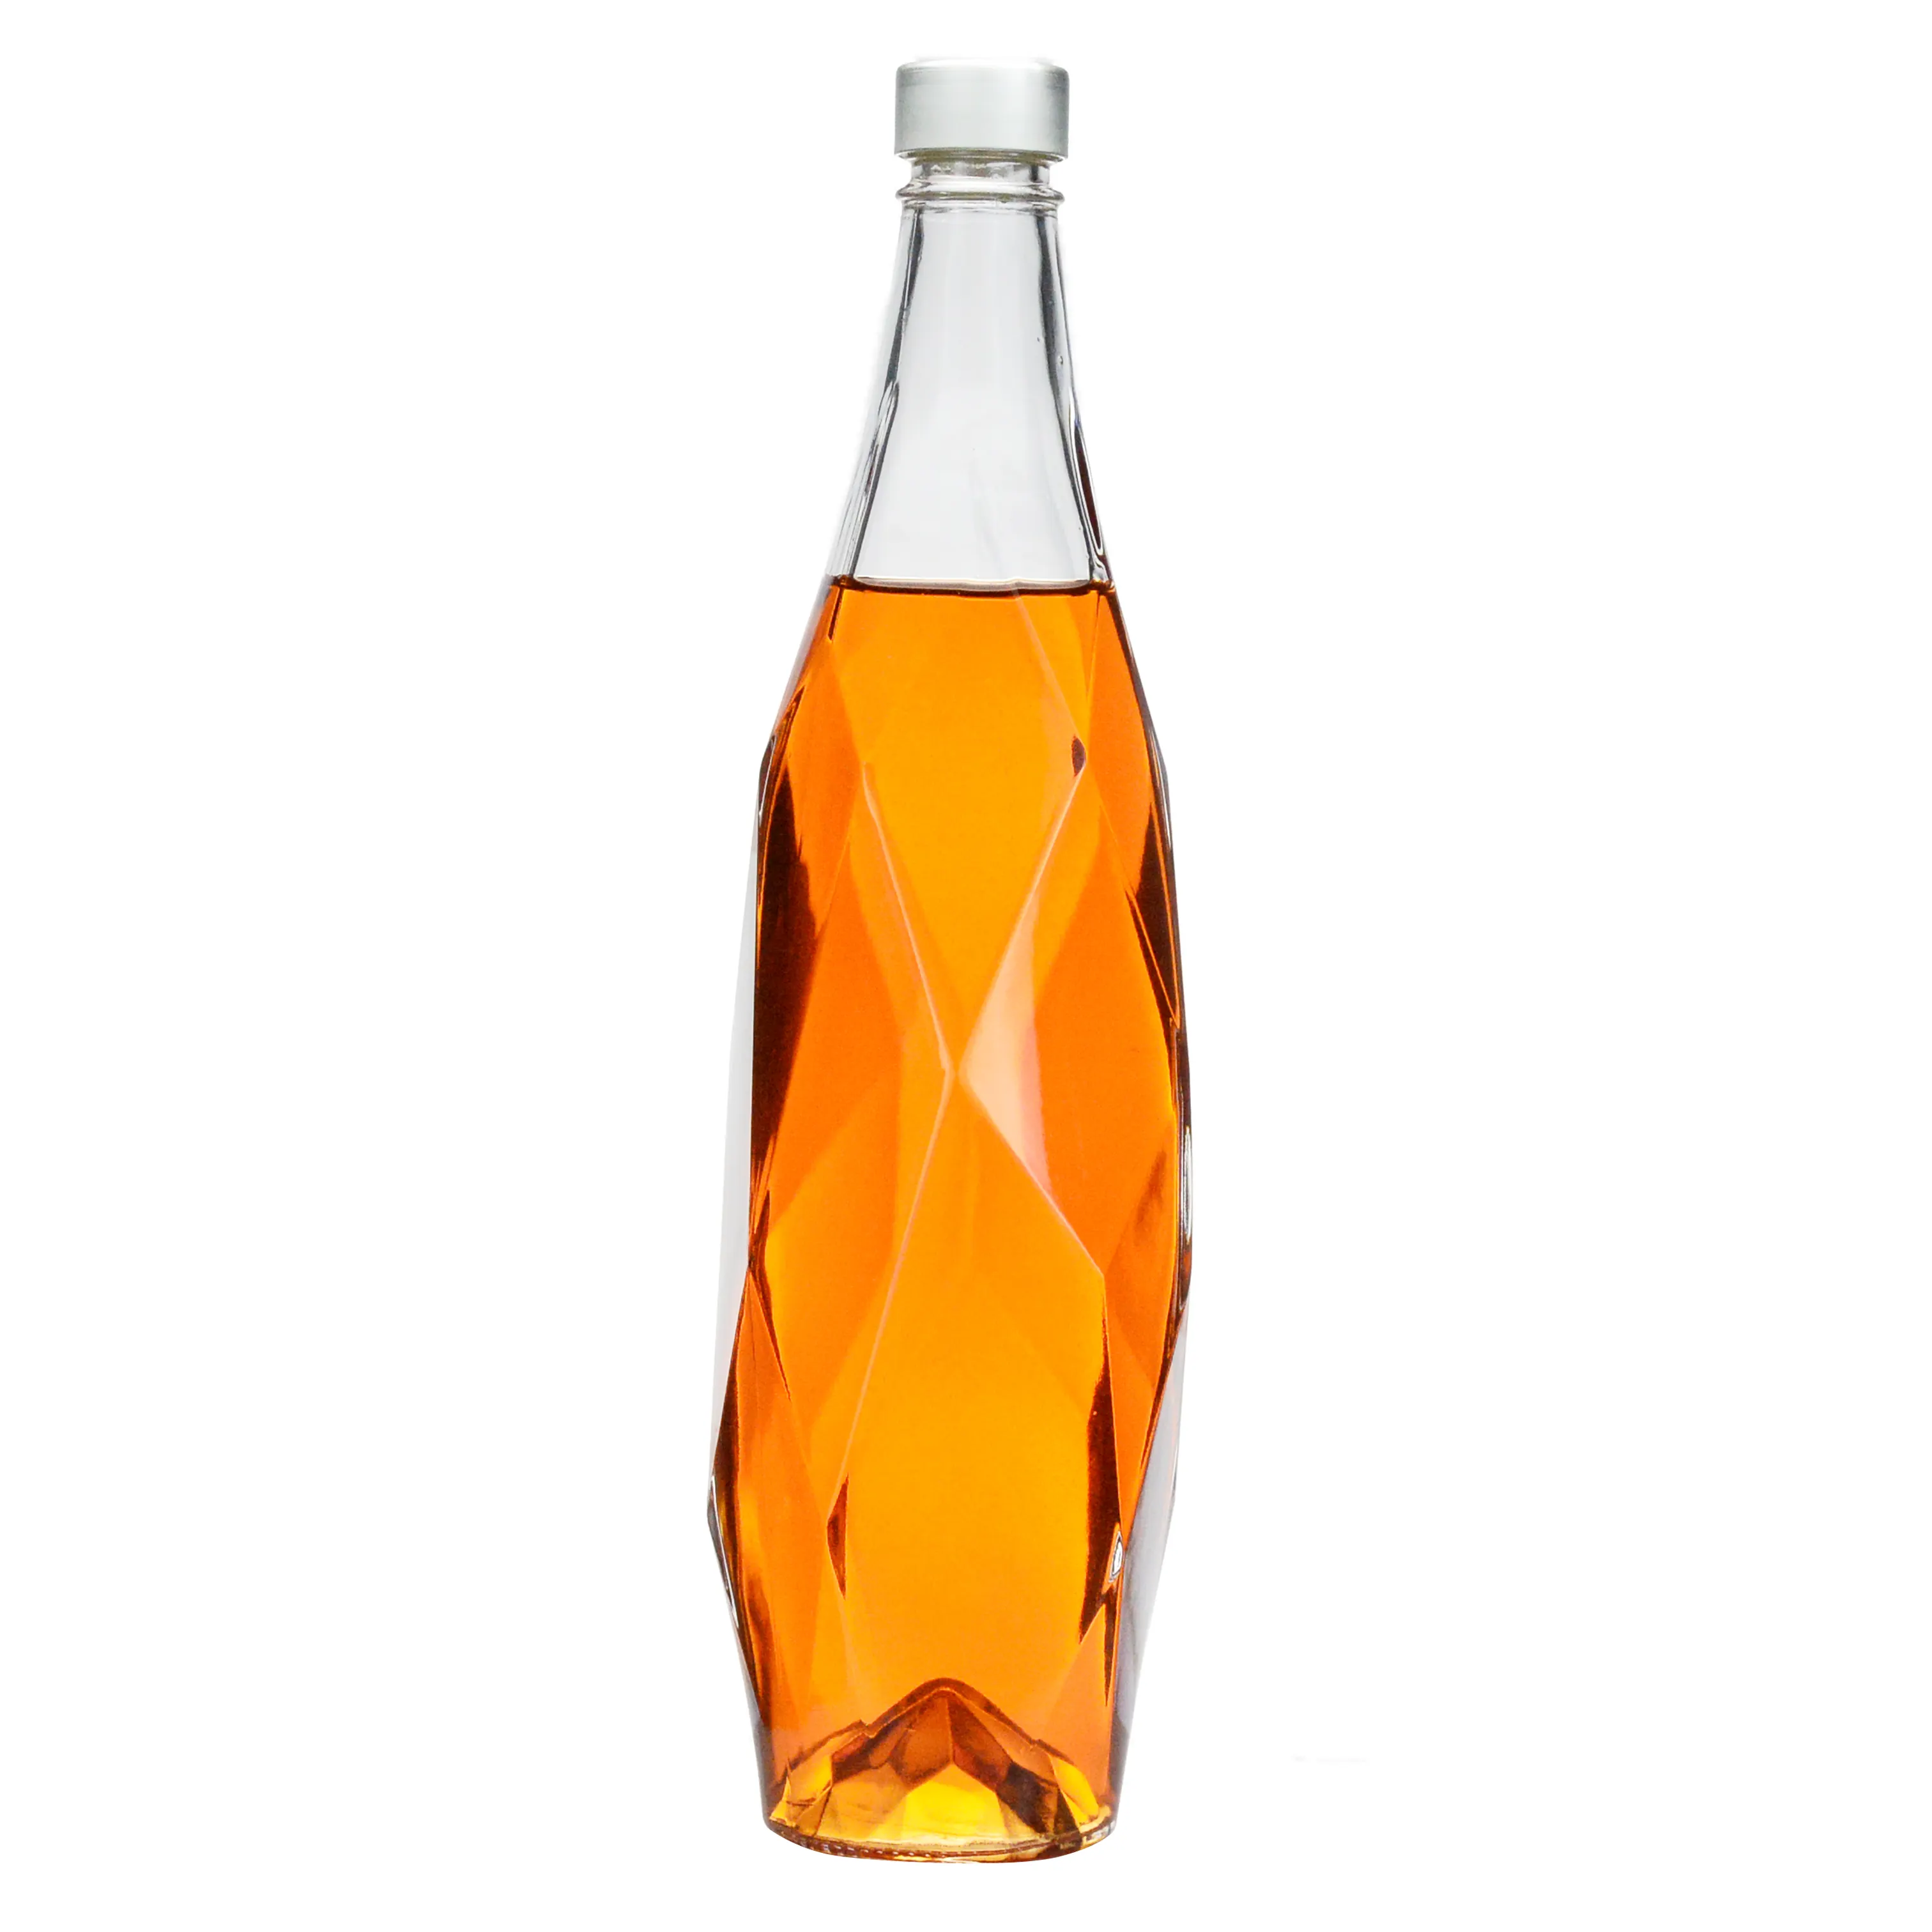 Personalizado Super Flint vacío vino claro Vodka whisky licor botella de vidrio jugo leche agua bebida Ron Gin Tequila contenedor